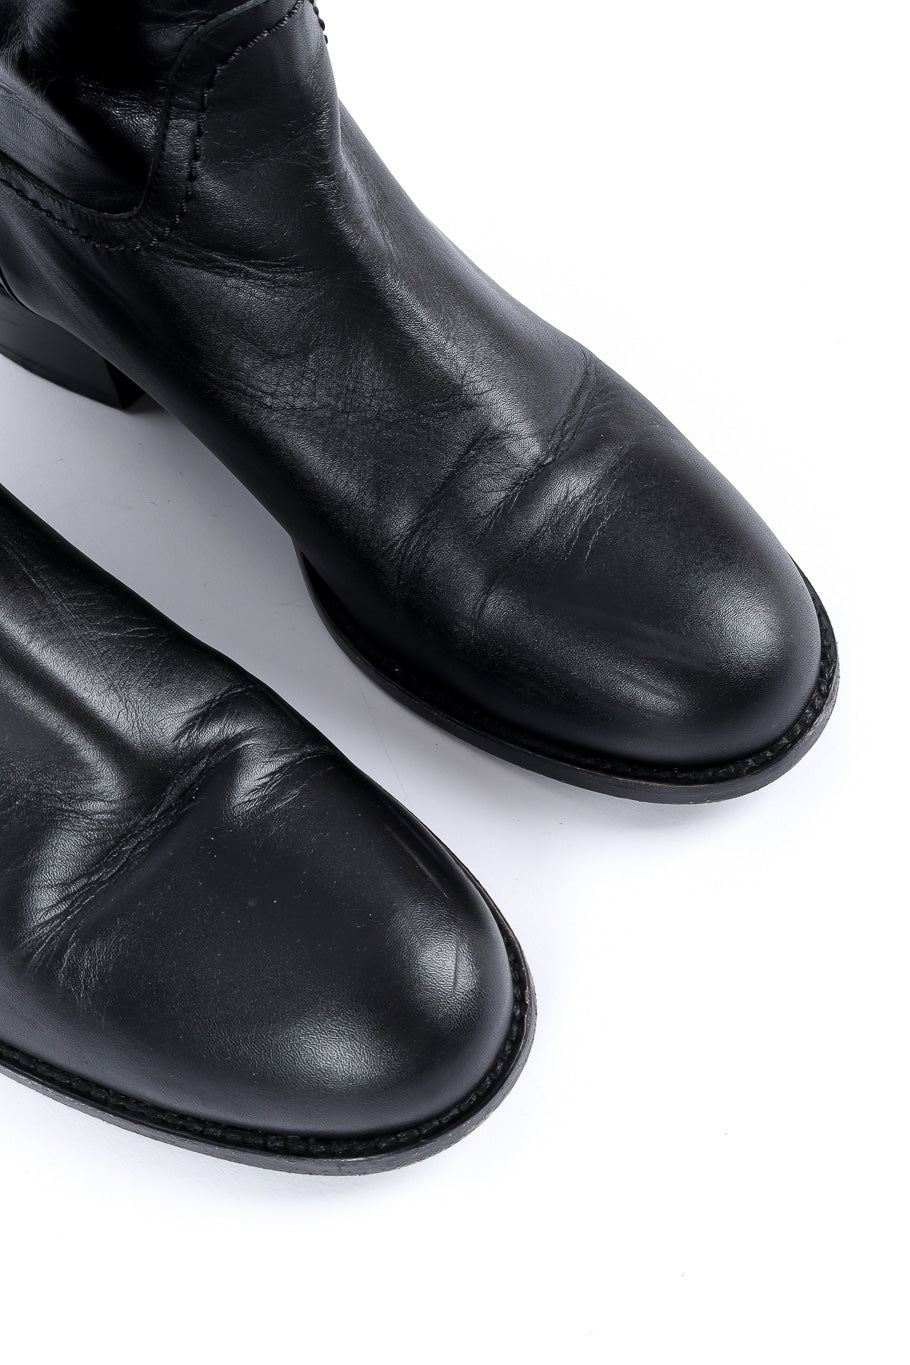 Chanel interlocking CC mid-calf boots toe close-up @recessla